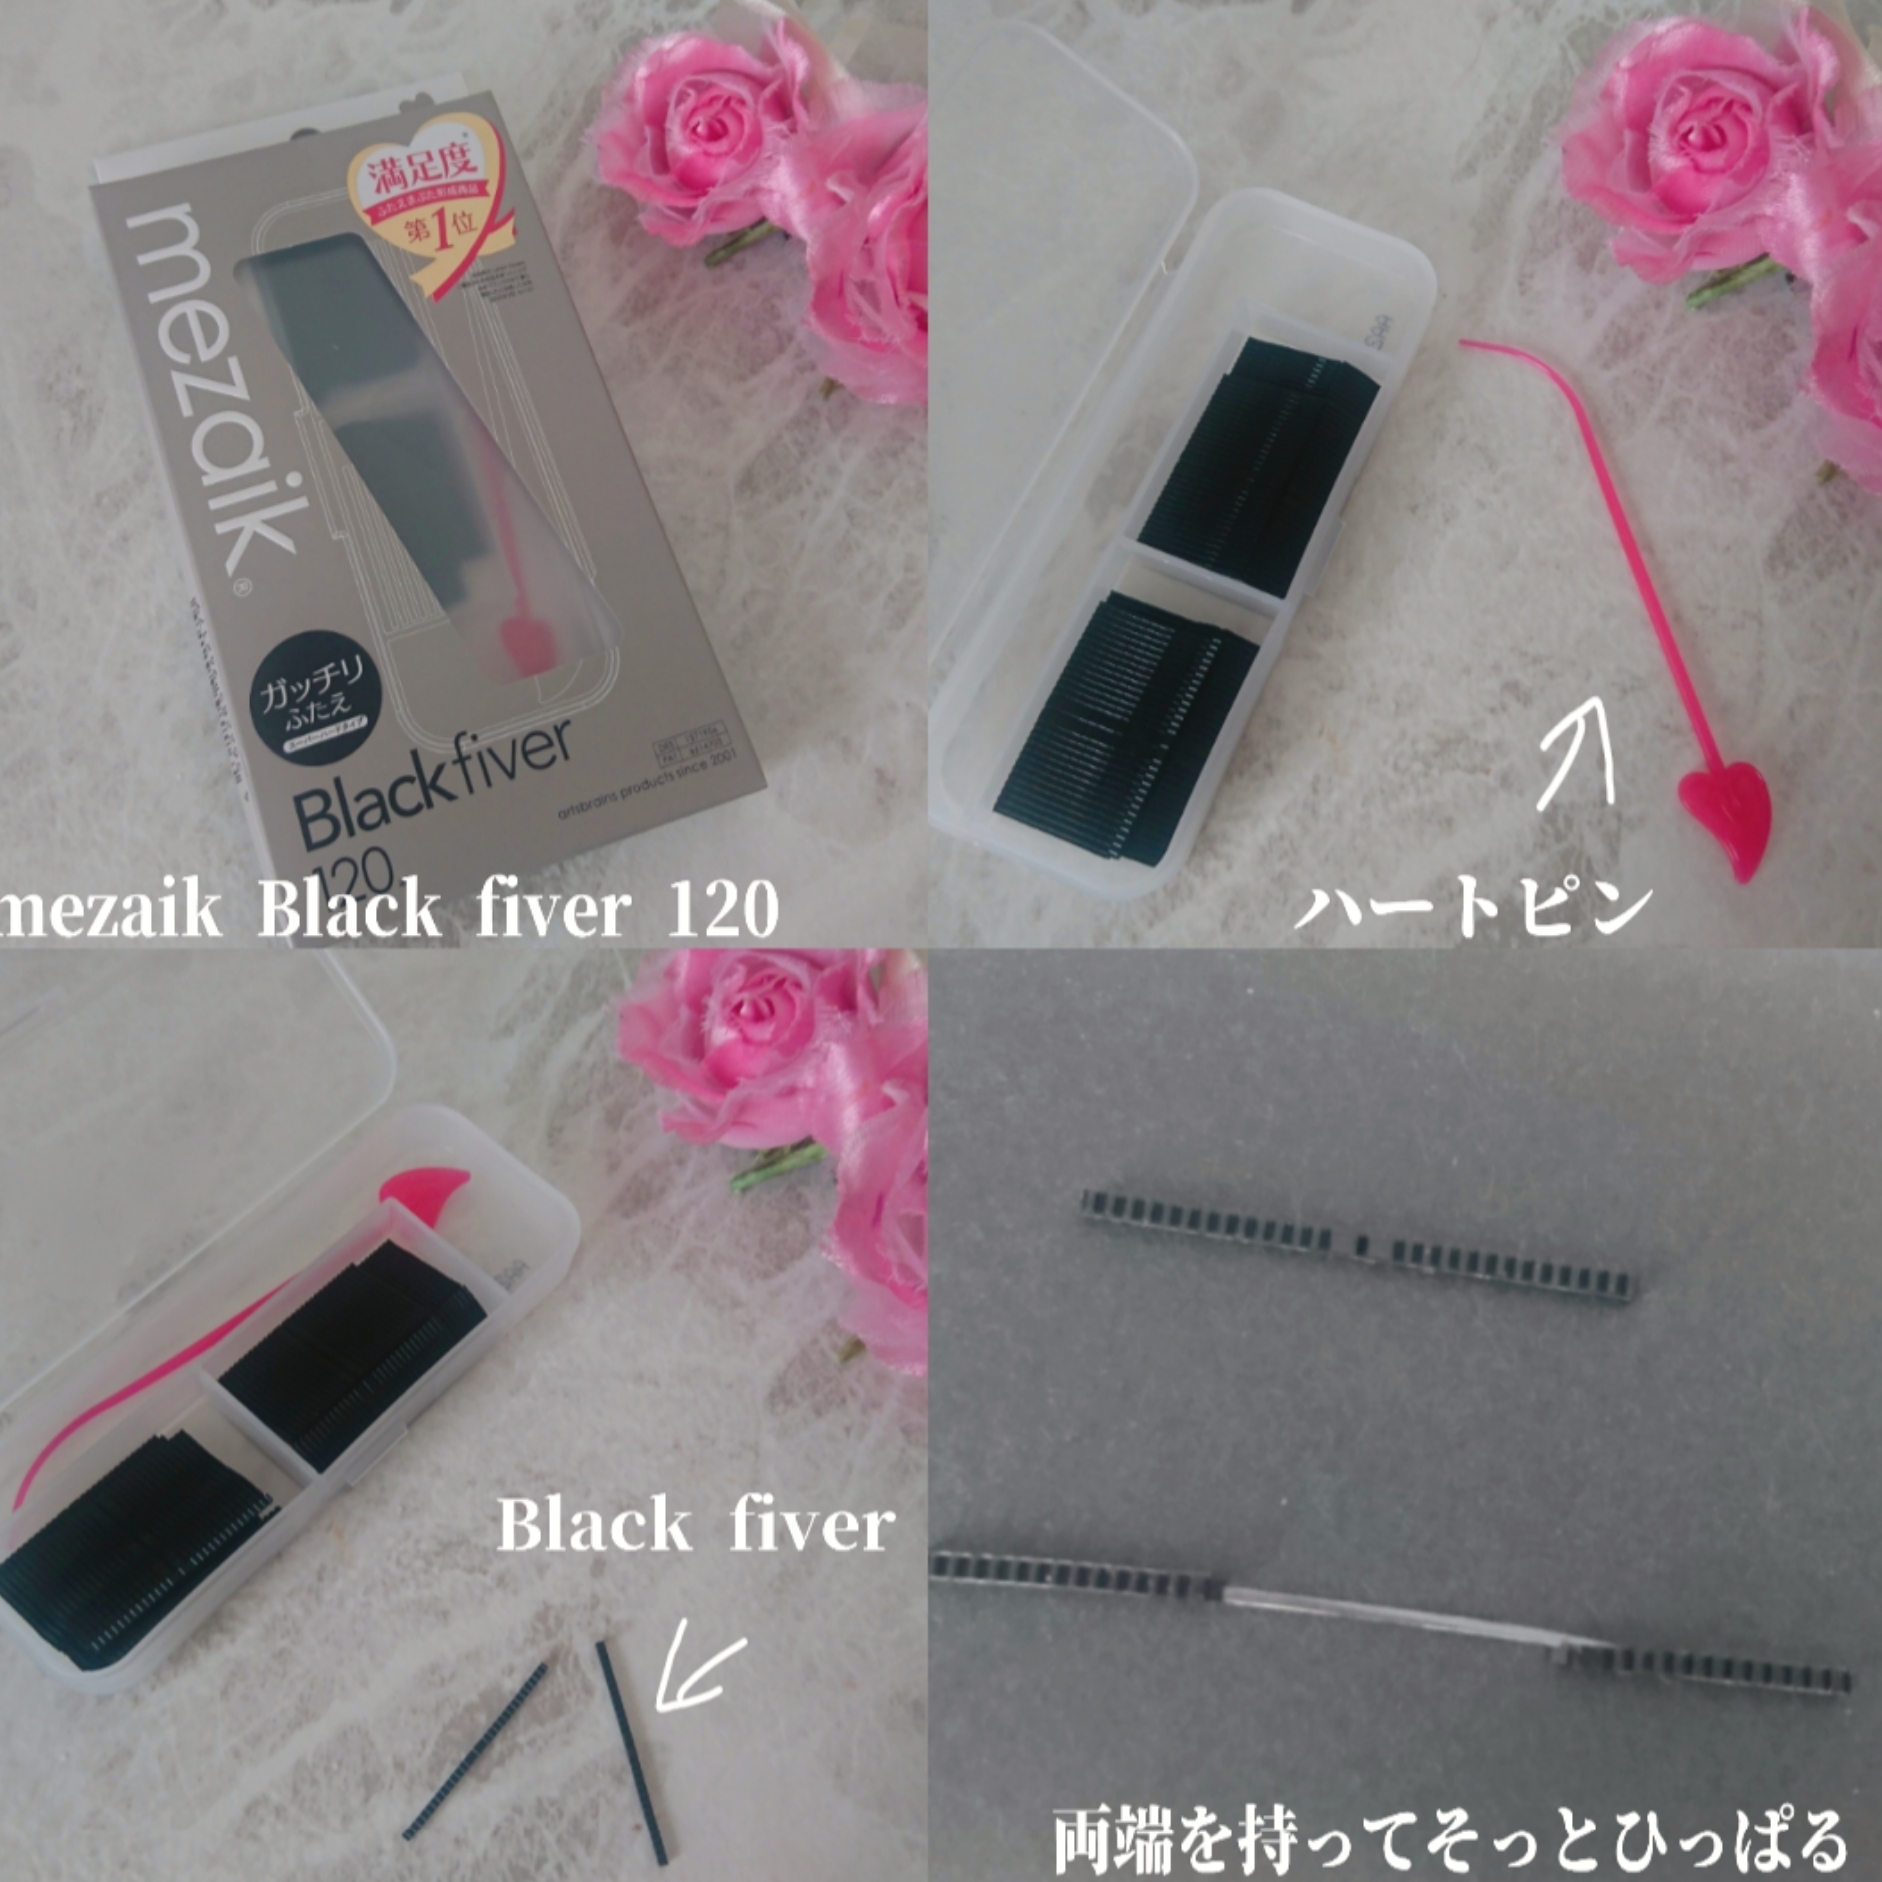 mezaik Black fiver120<下地&カッター付き>スーパーハードタイプ 120本入 ¥2,783(税込)を使ったYuKaRi♡さんのクチコミ画像2